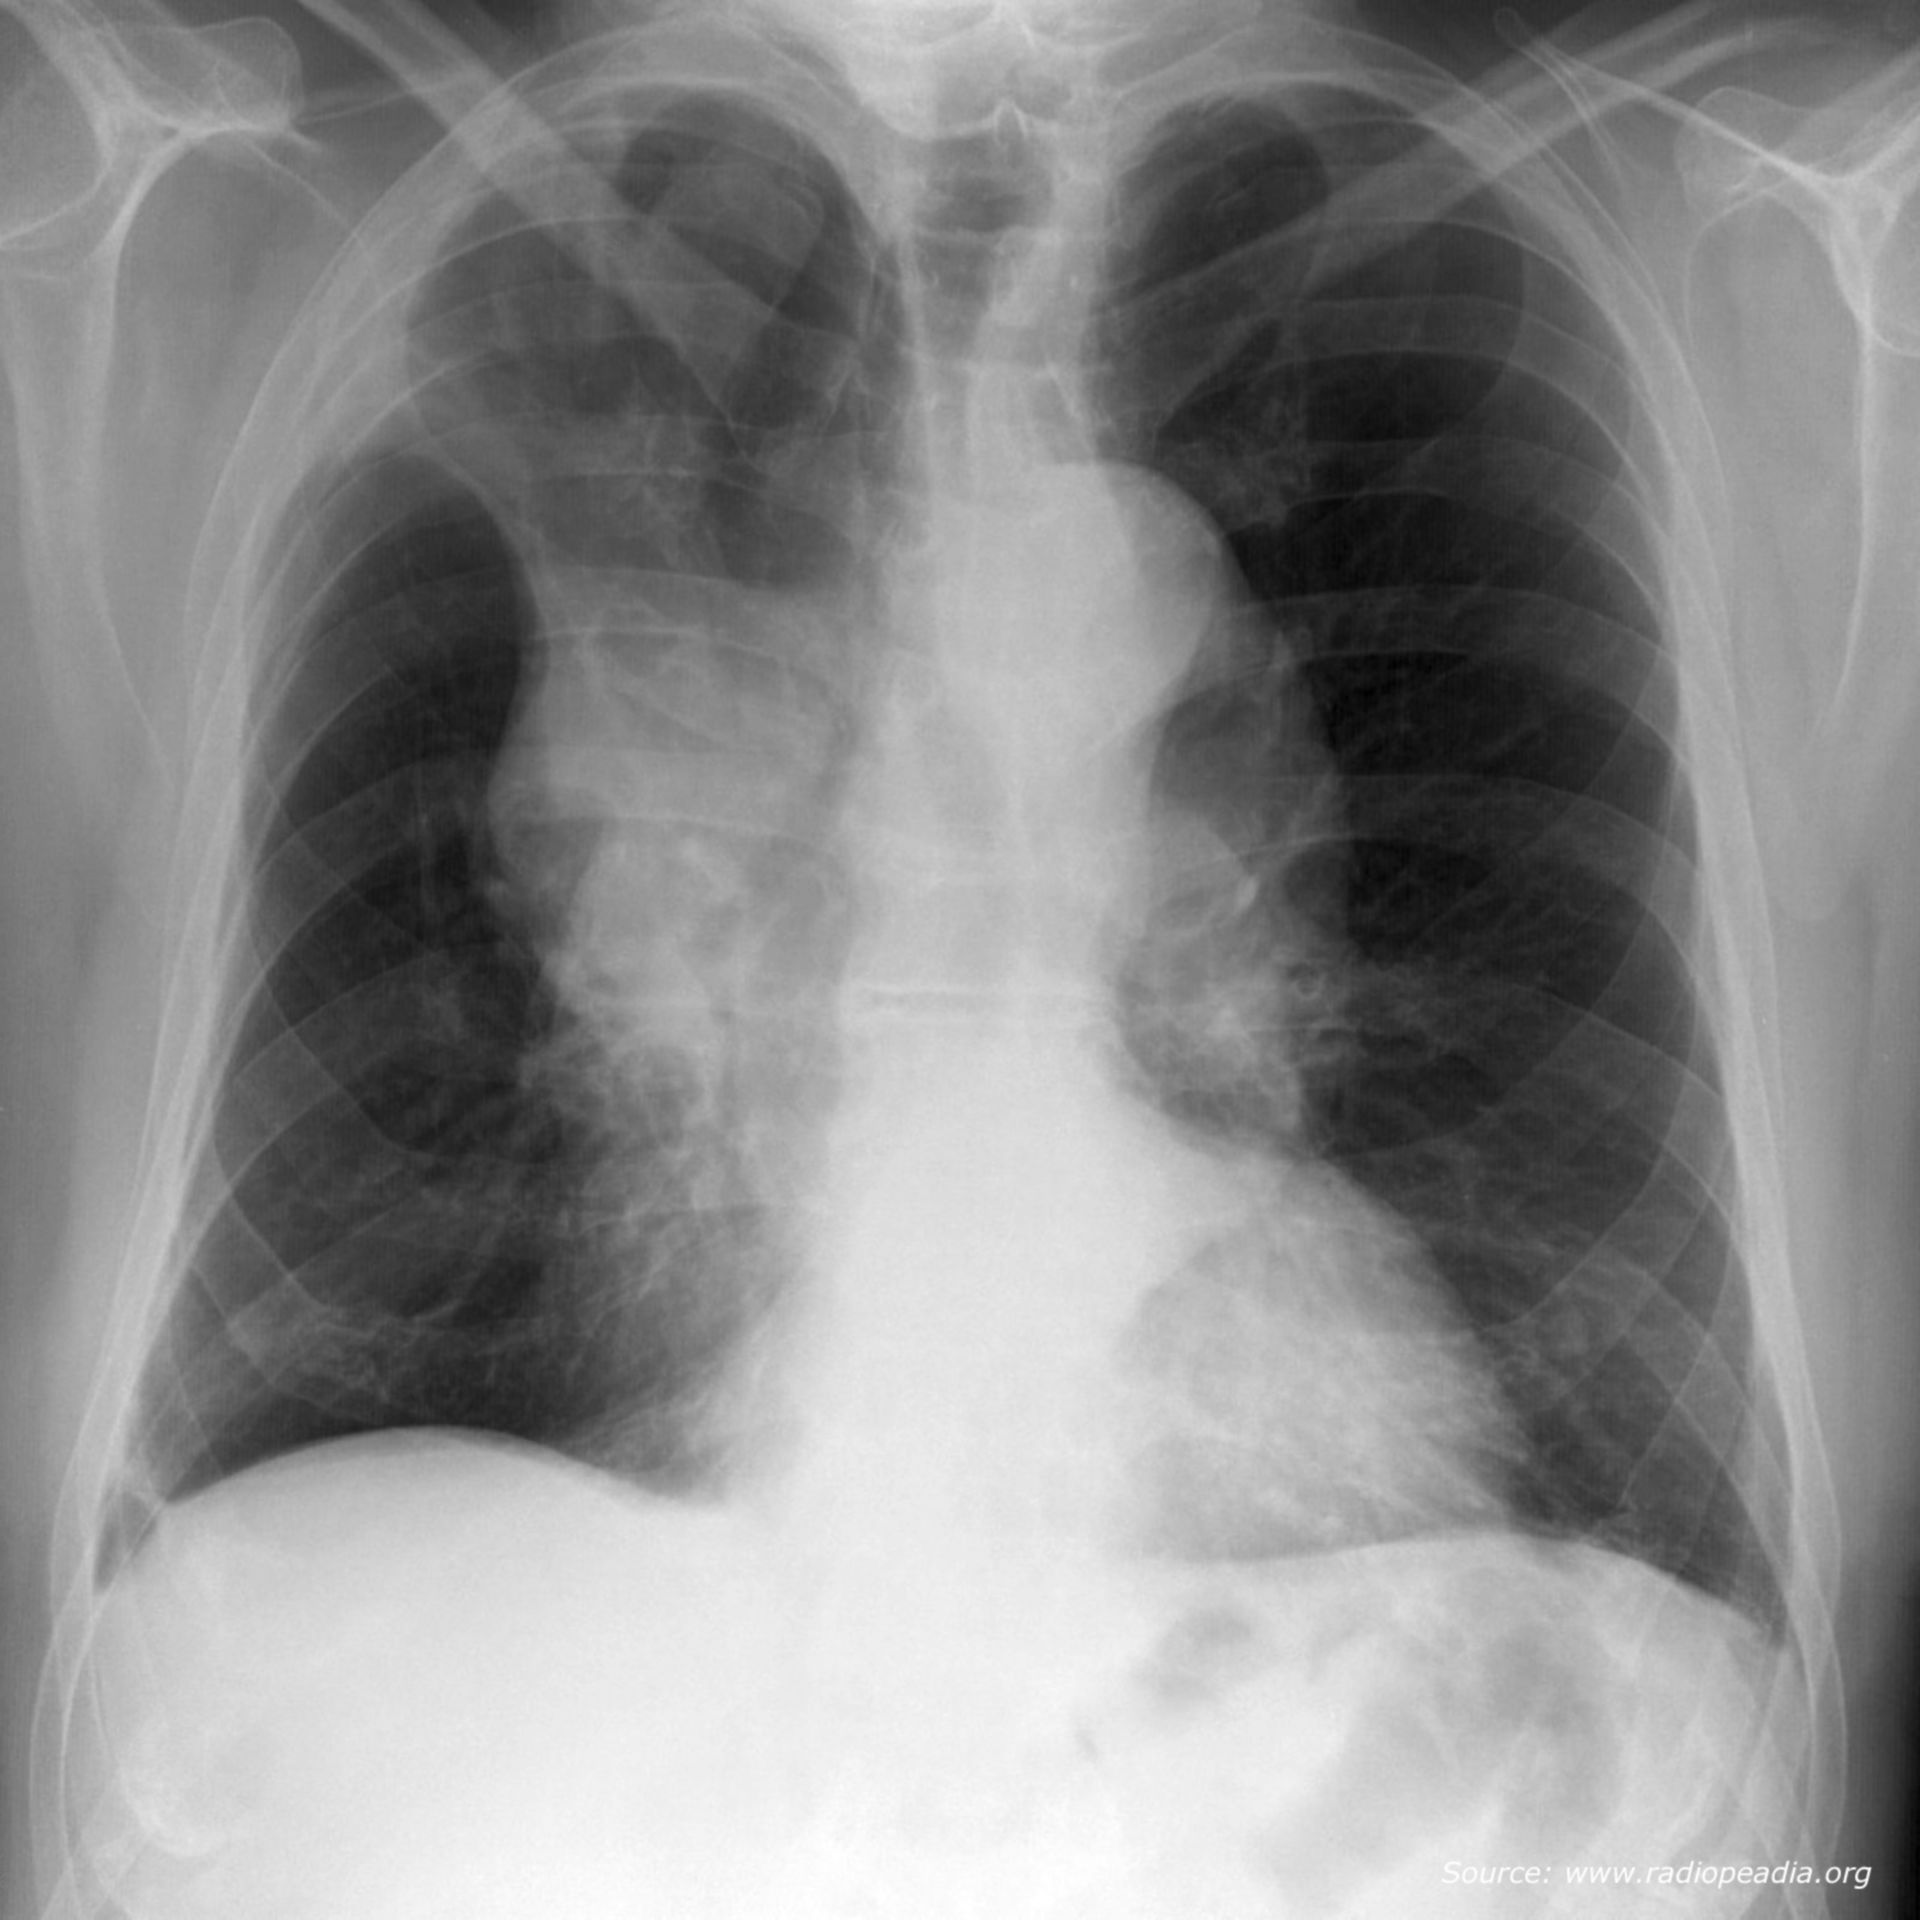 Röntgen-Thorax p-a (Bildrätsel)